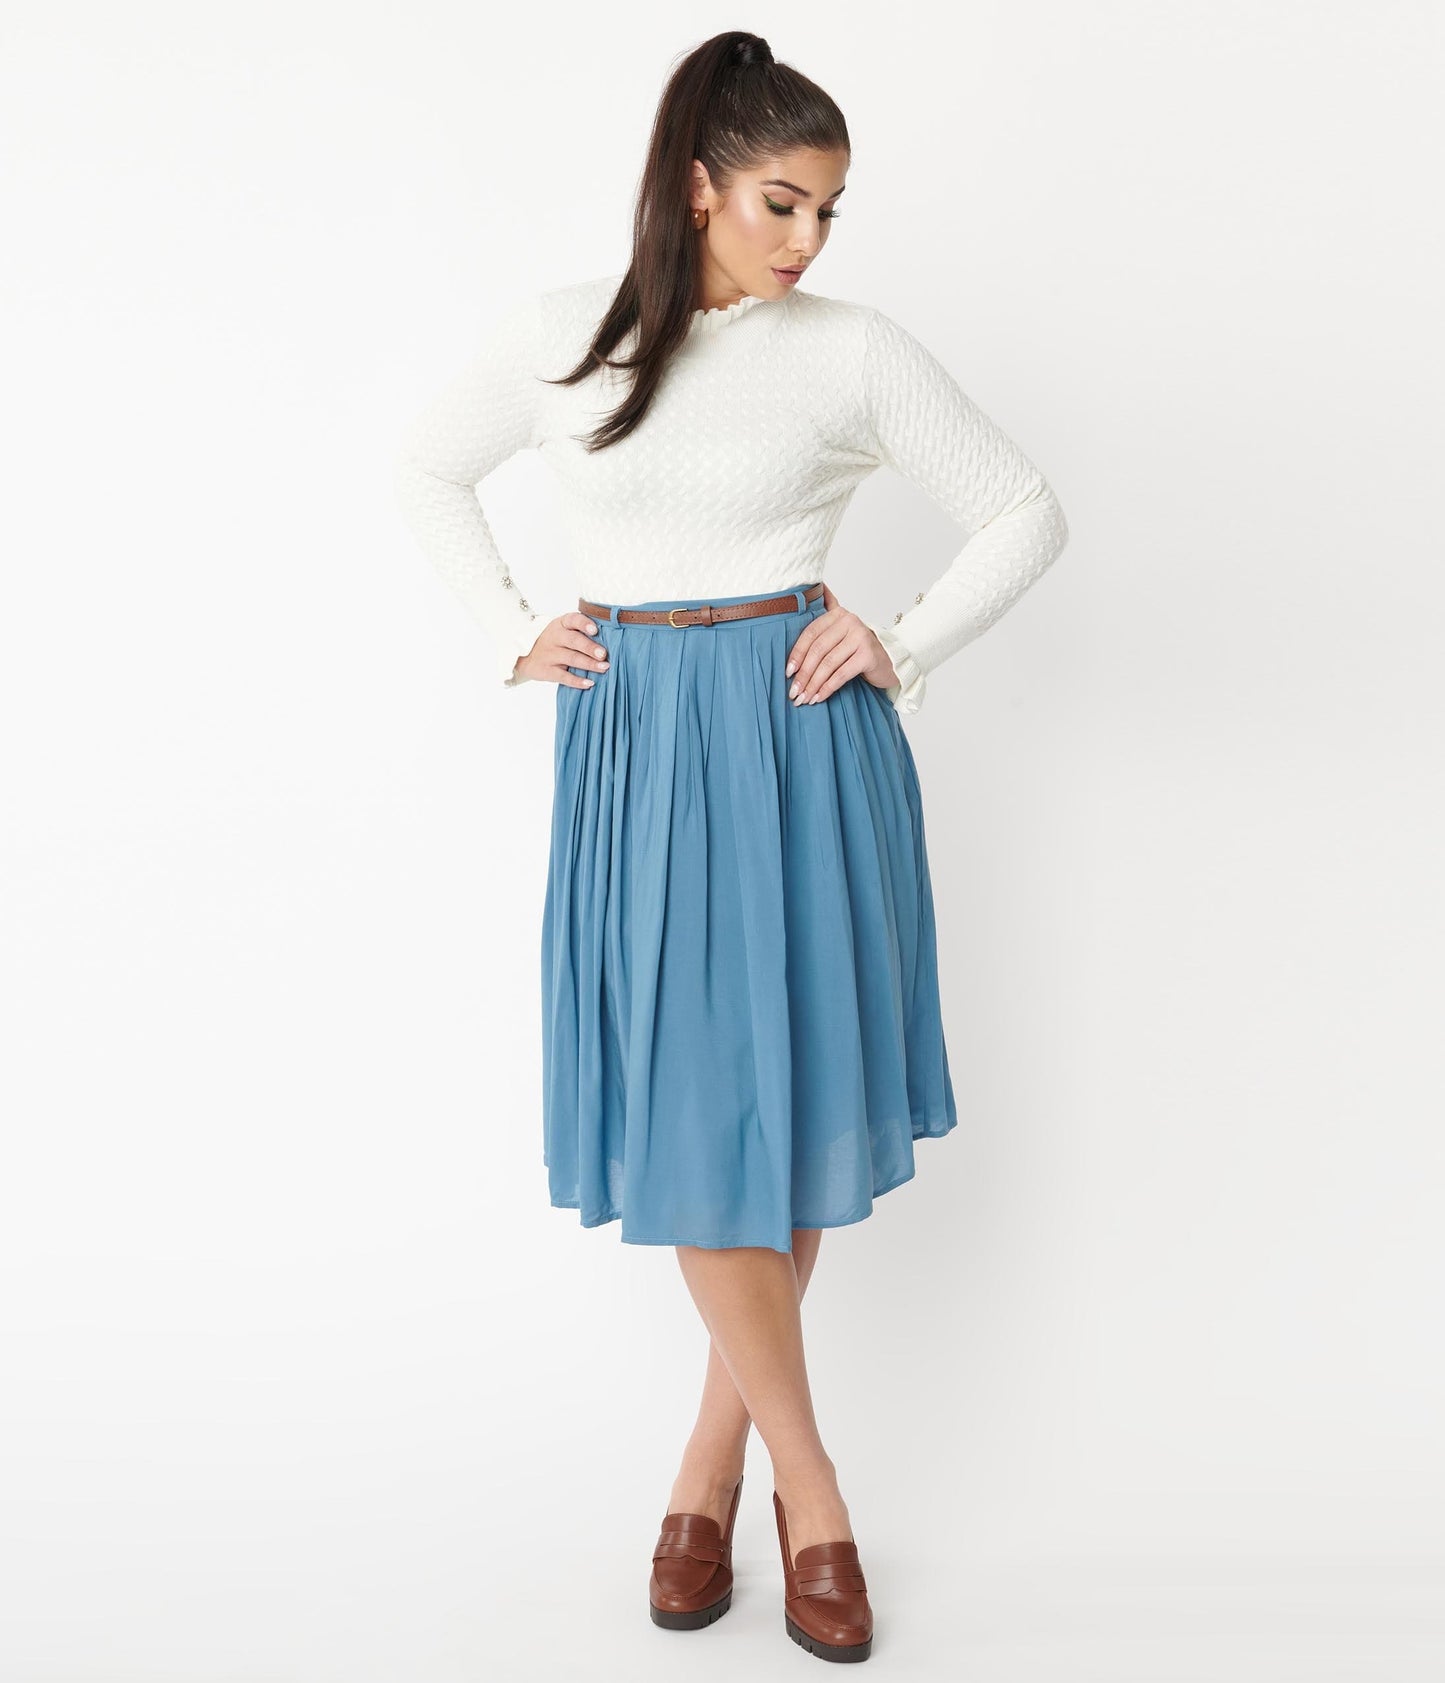 1950s Vintage Style Light Blue Pleated Skirt